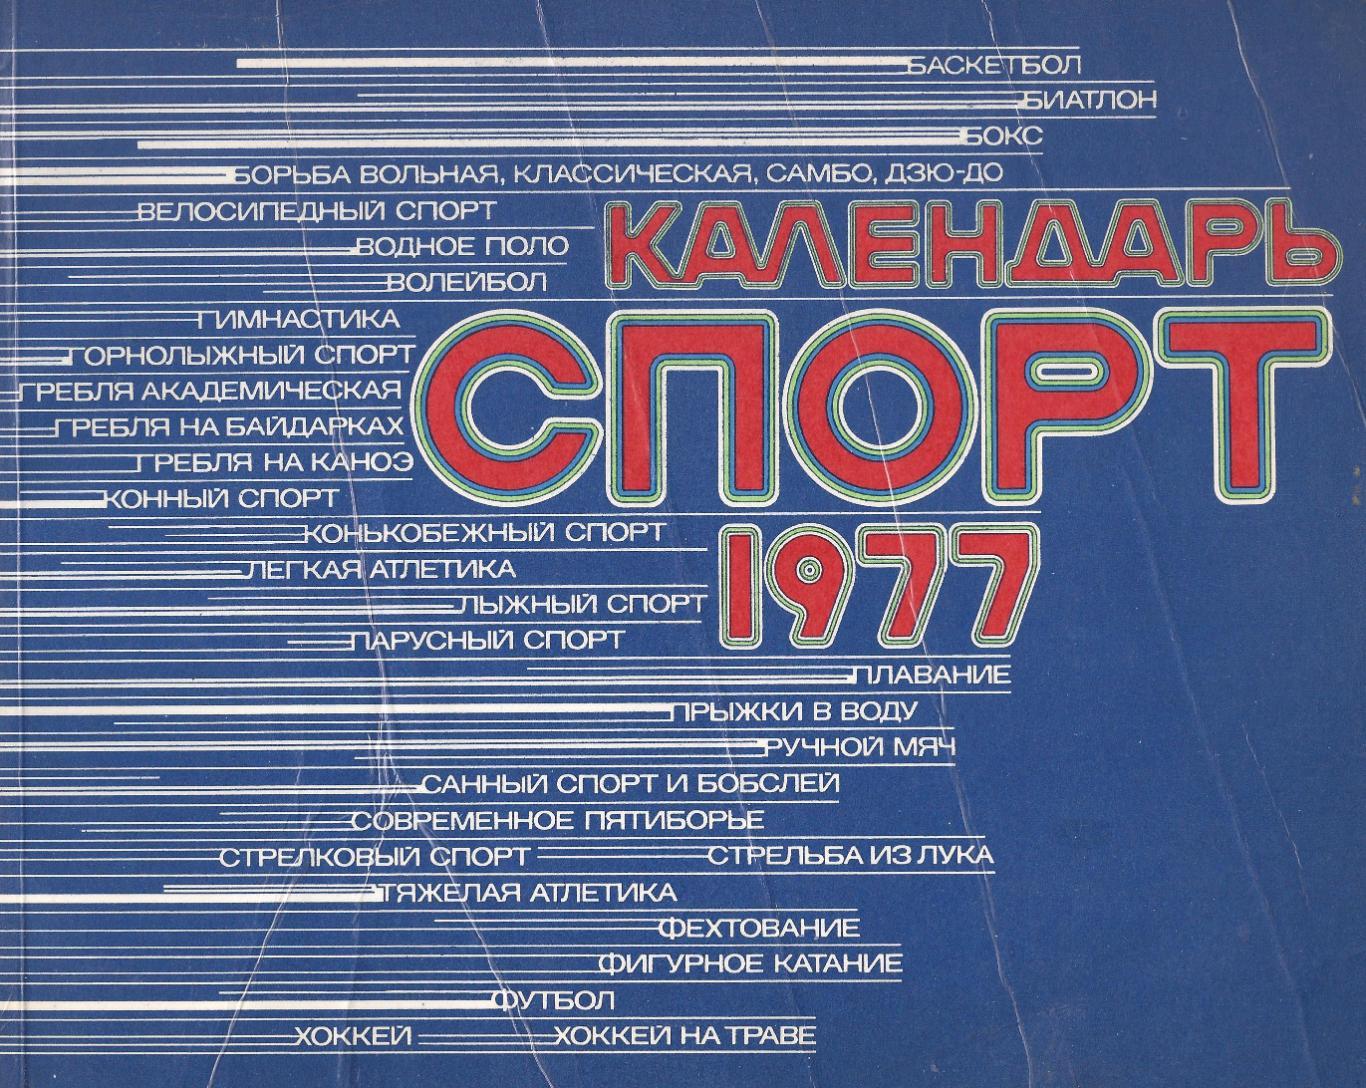 Календарь Спорт - 1977